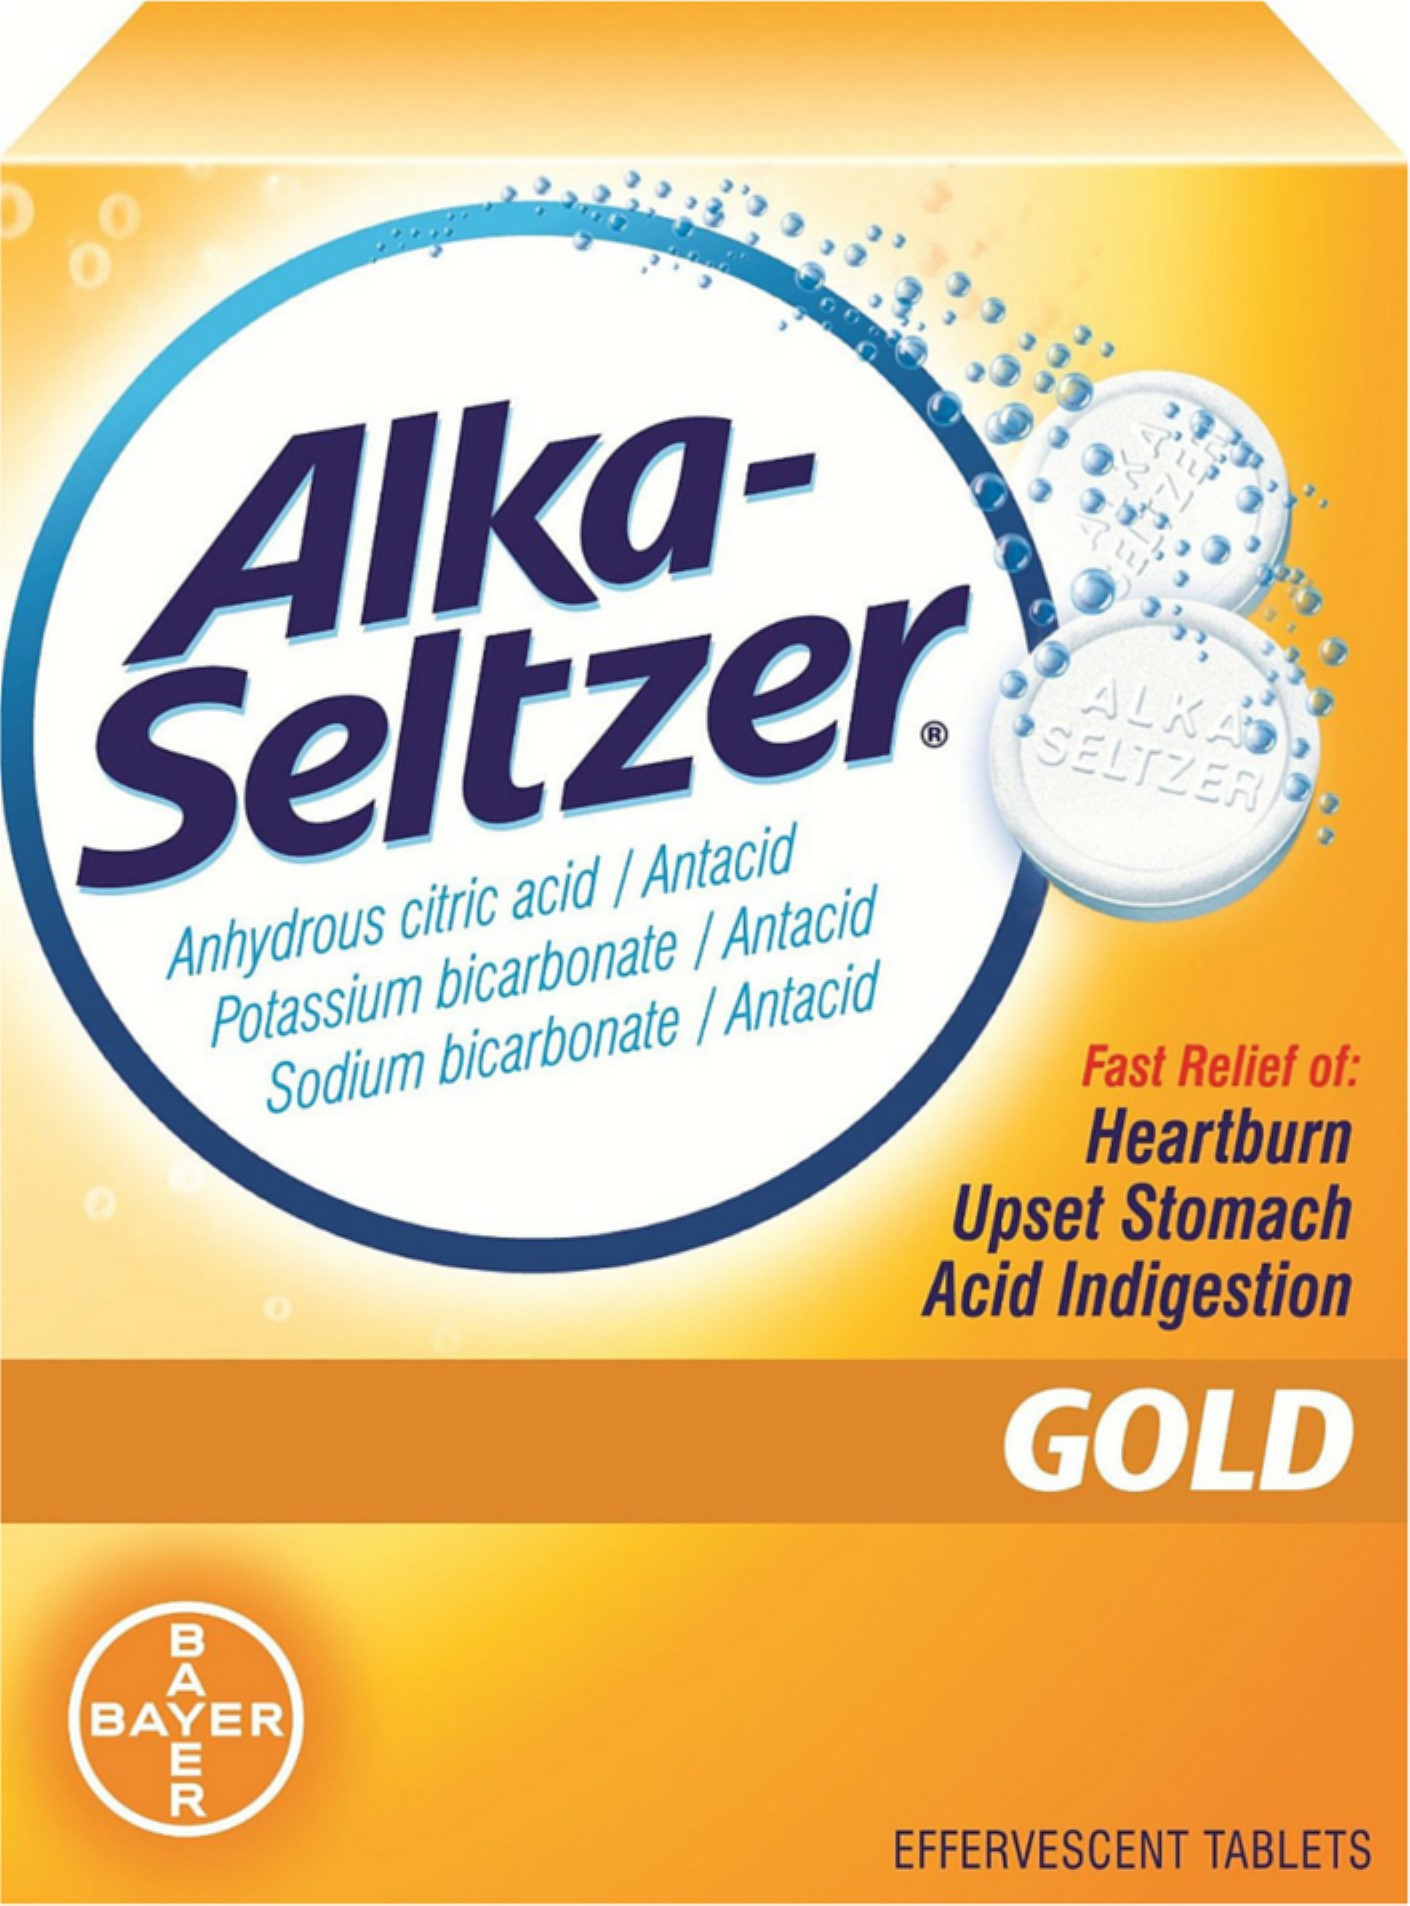 Alka-Seltzer Effervescent Tablets Gold 36 Tablets (Pack of 3) - image 1 of 6